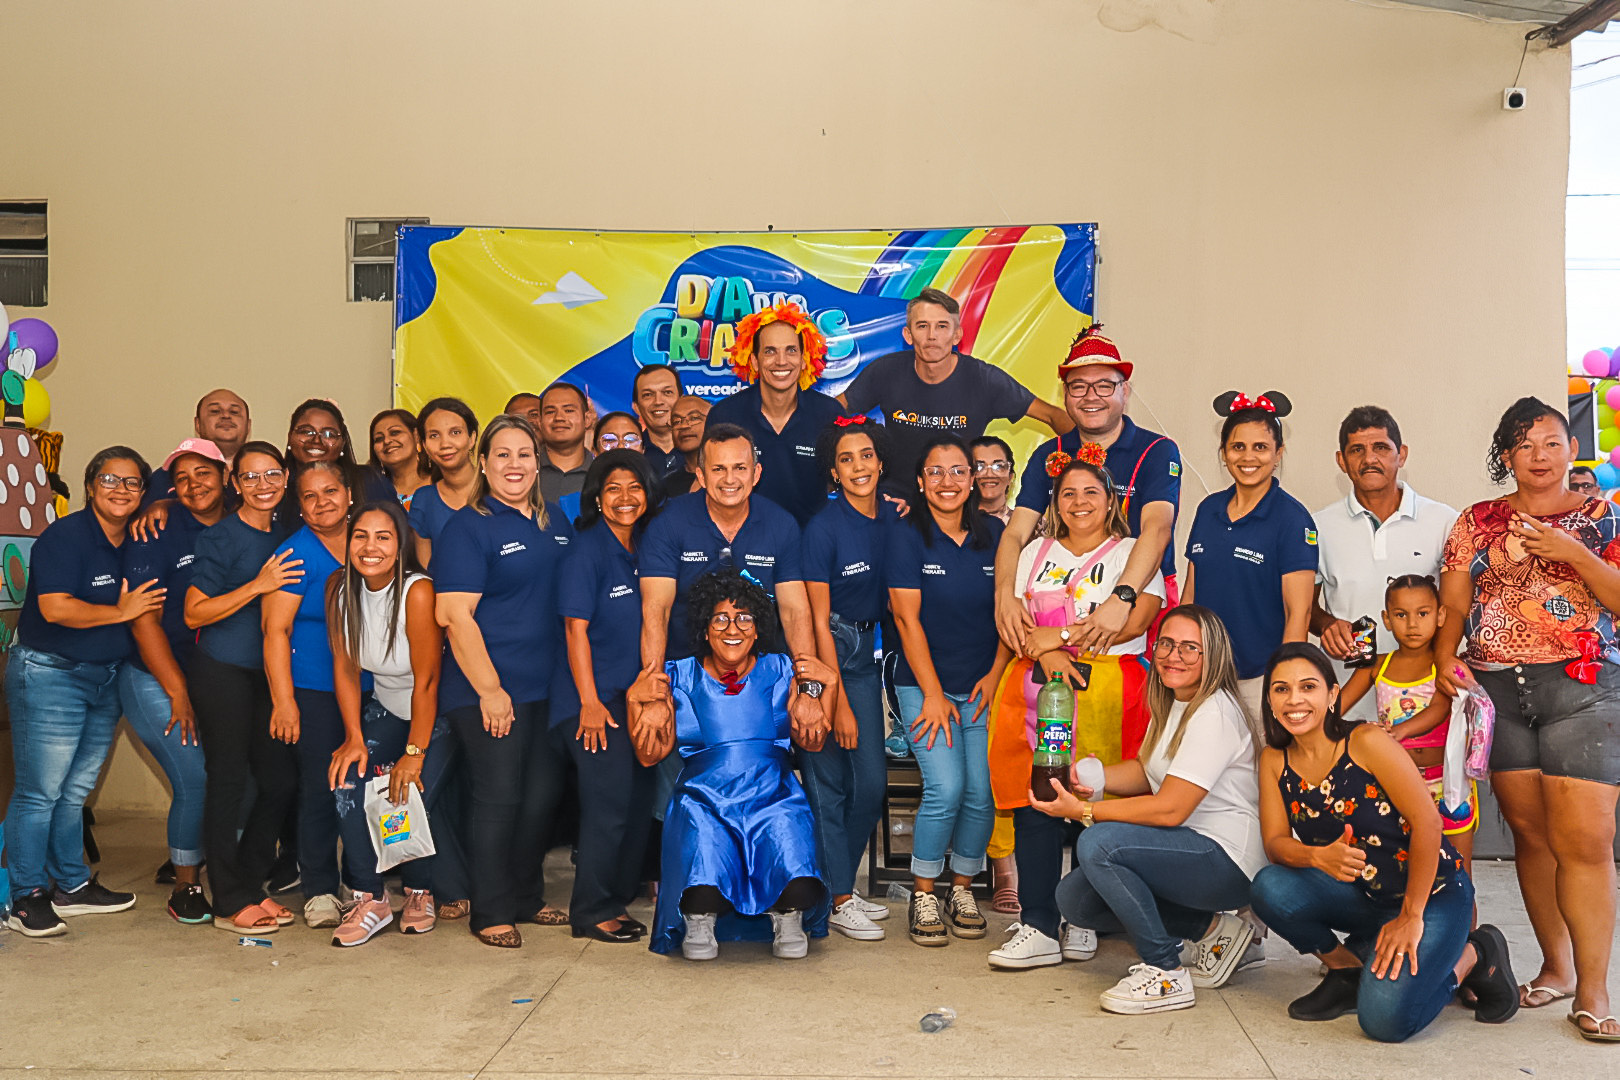 Eduardo Lima realiza festa para 500 crianças no bairro Santa Maria